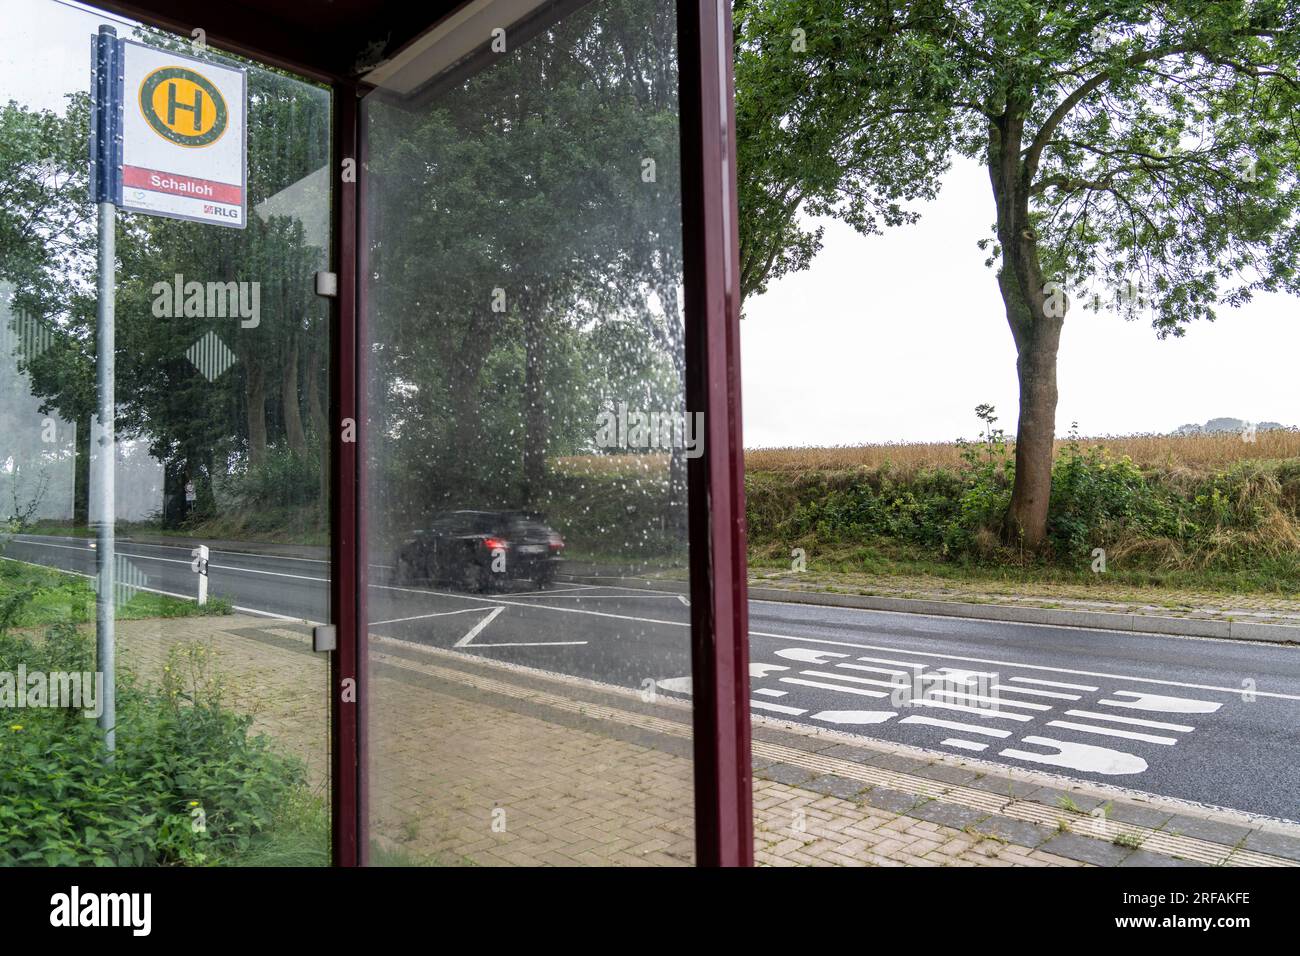 Bushaltestelle Schalloh, auf dem Land, Sauerland, in der Nähe von Soest-Bergede, Country Road L856, Buslinie 552, hat 2 Haltestellen pro Tag, Montag bis Freitag Stockfoto